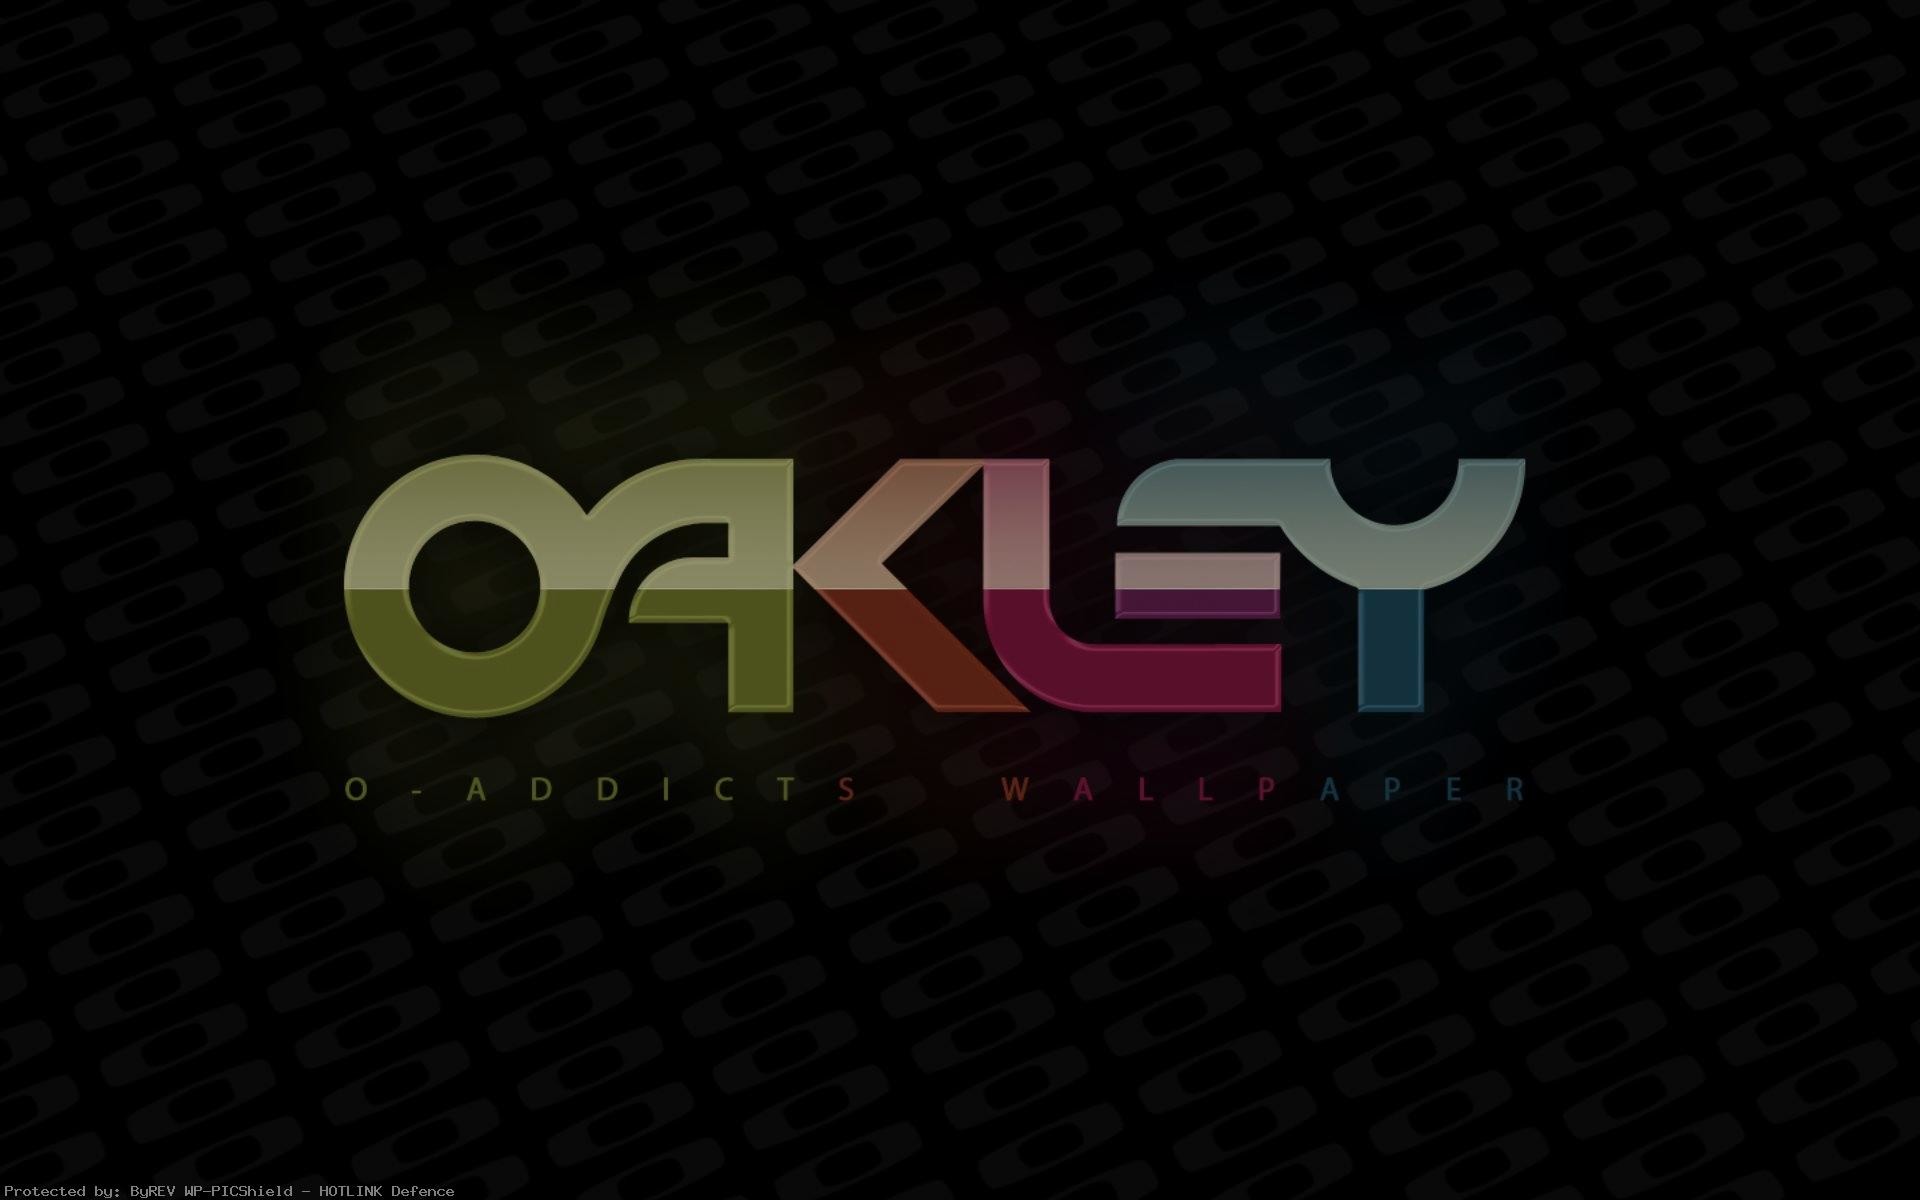 Oakley Wallpaper Image